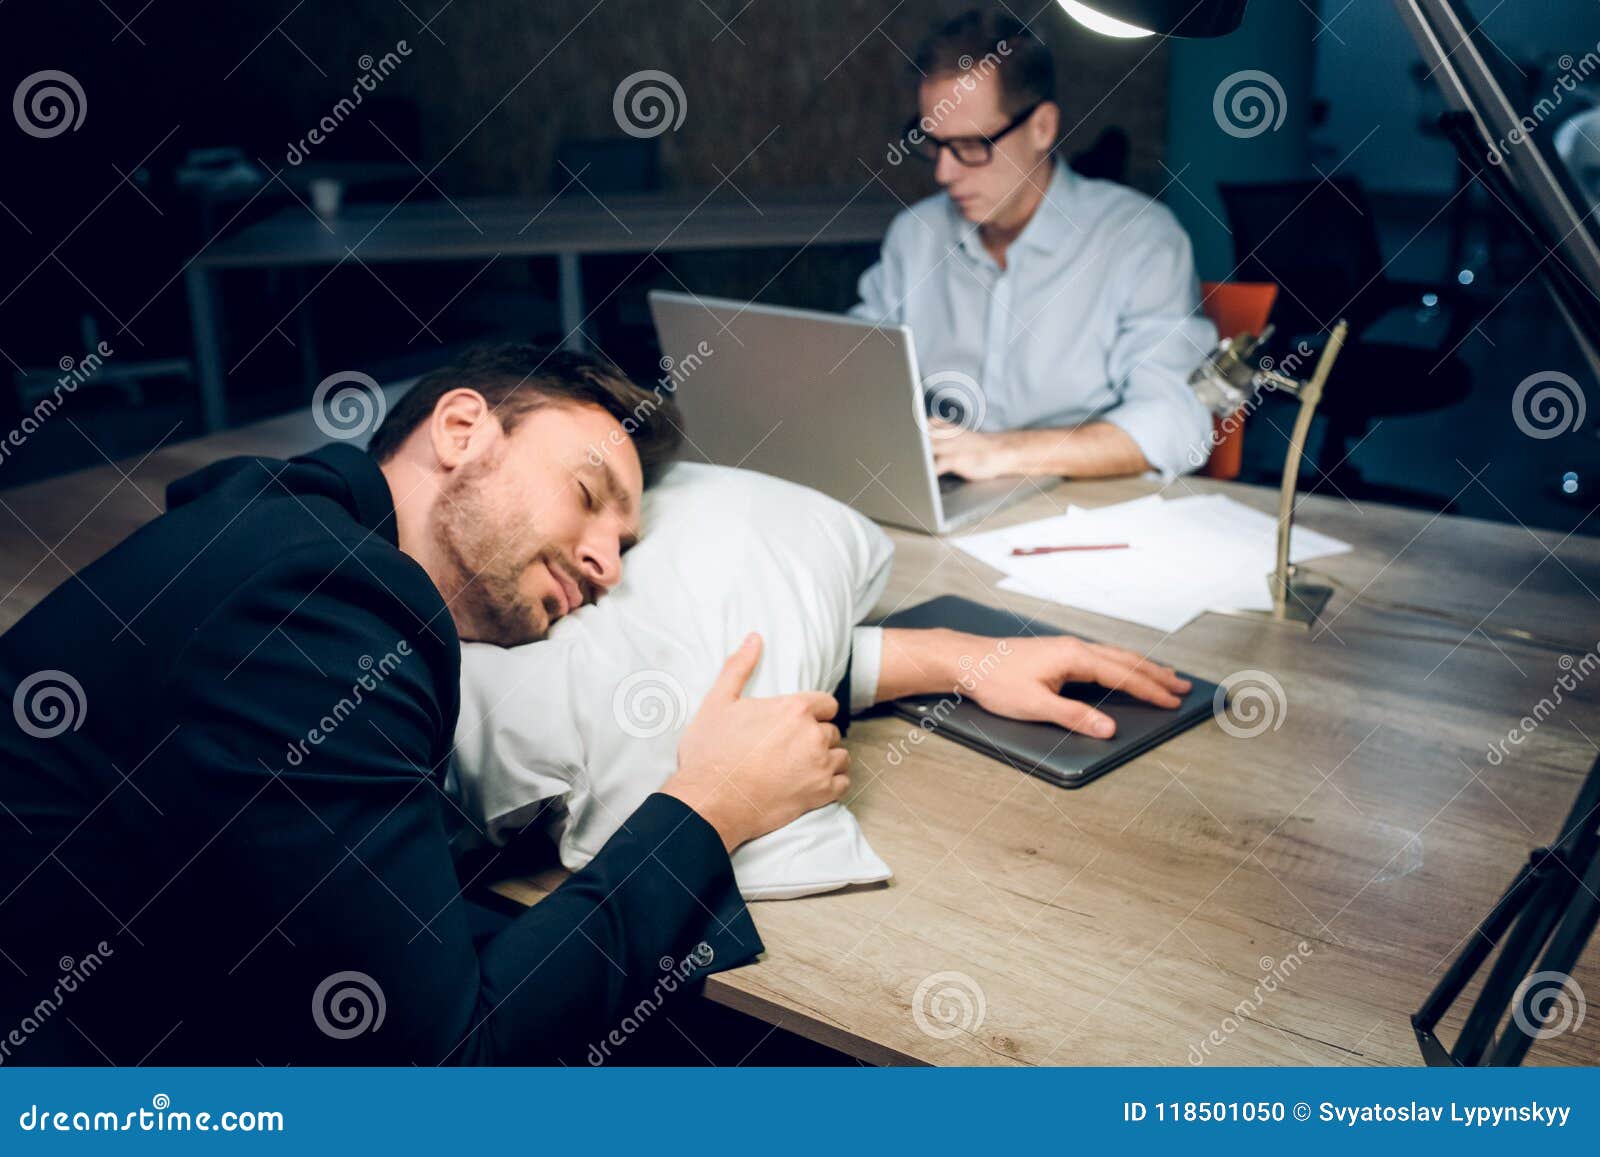 Young Businessman Sleeping On Table Stock Photo Image Of Sleep